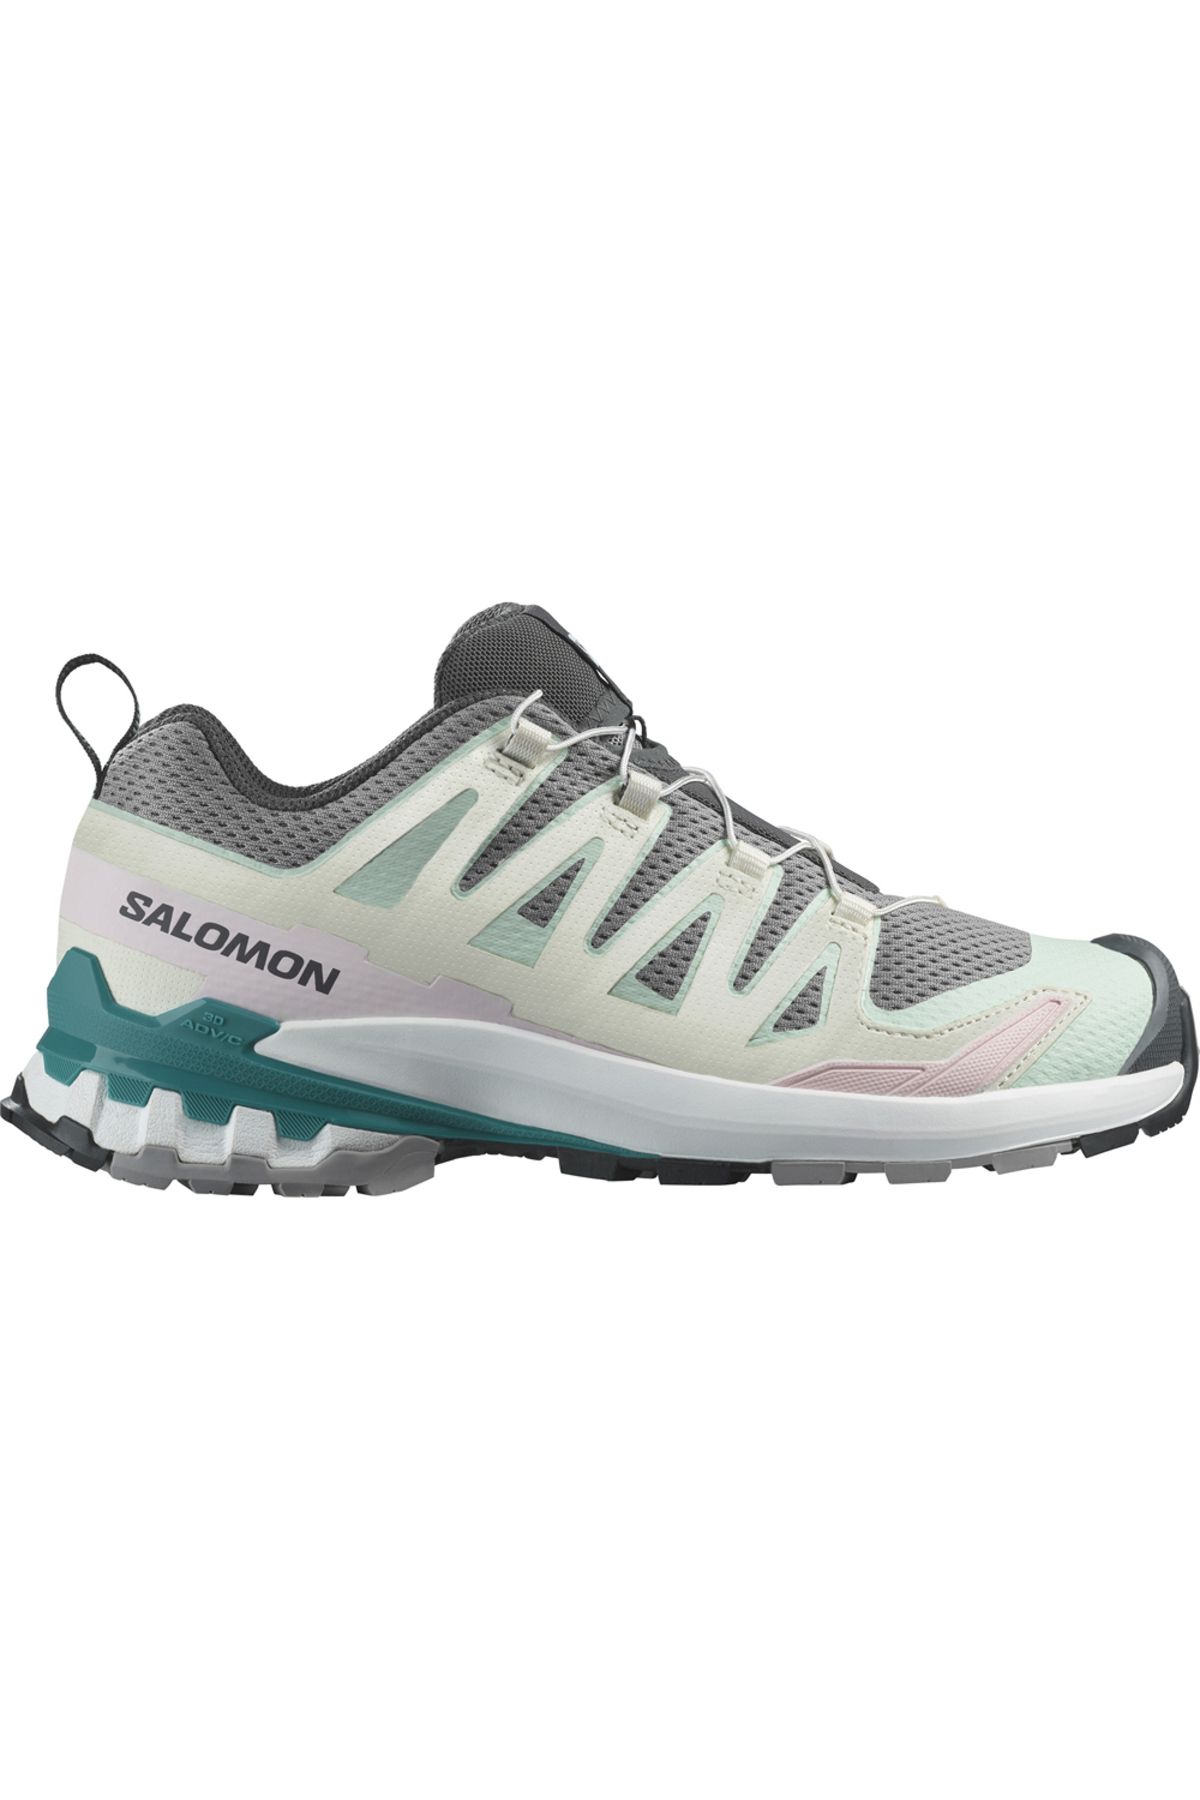 Salomon Xa Pro 3d V9 W Kadın Patika Koşu Ayakkabısı